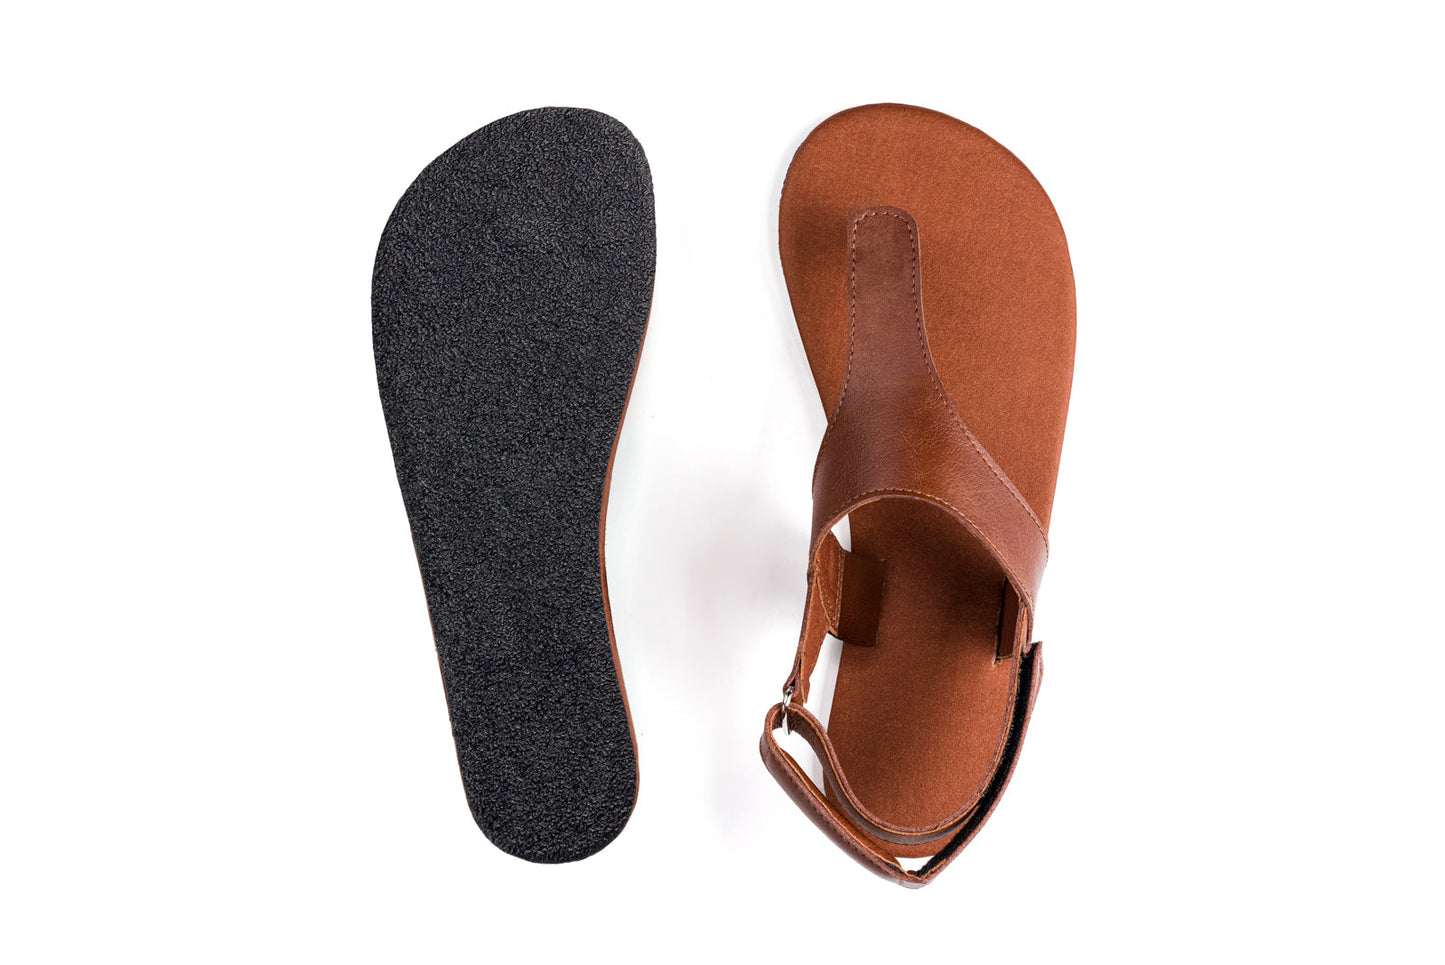 Ahinsa Simple barfods sandaler til kvinder i farven brown, saal